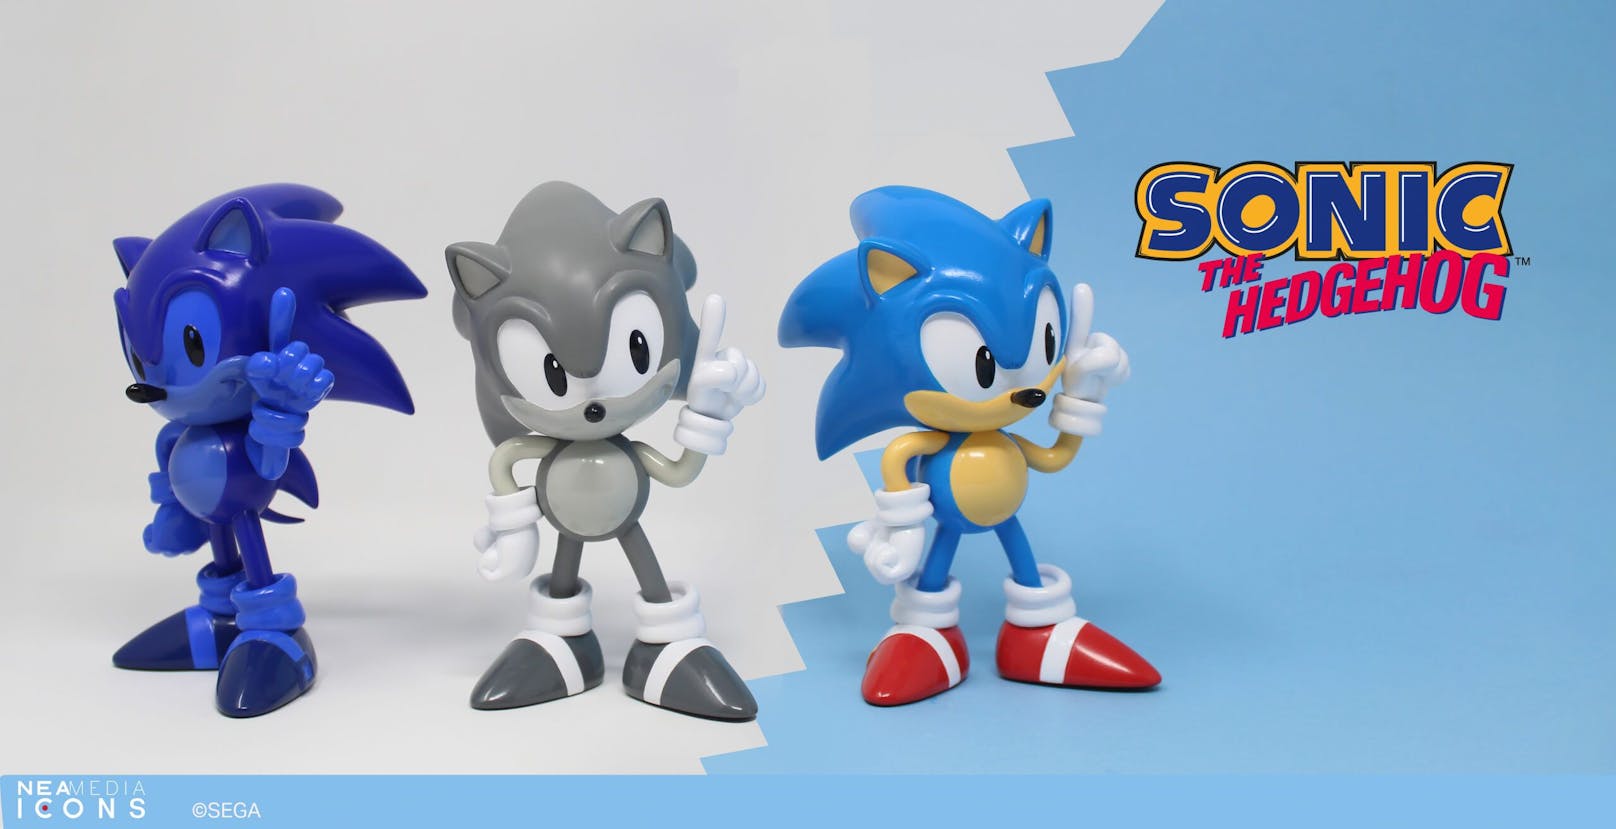 Sega of America und Neamedia Icons stellen vor: Sammelstatuen von Sonic the Hedgehog.